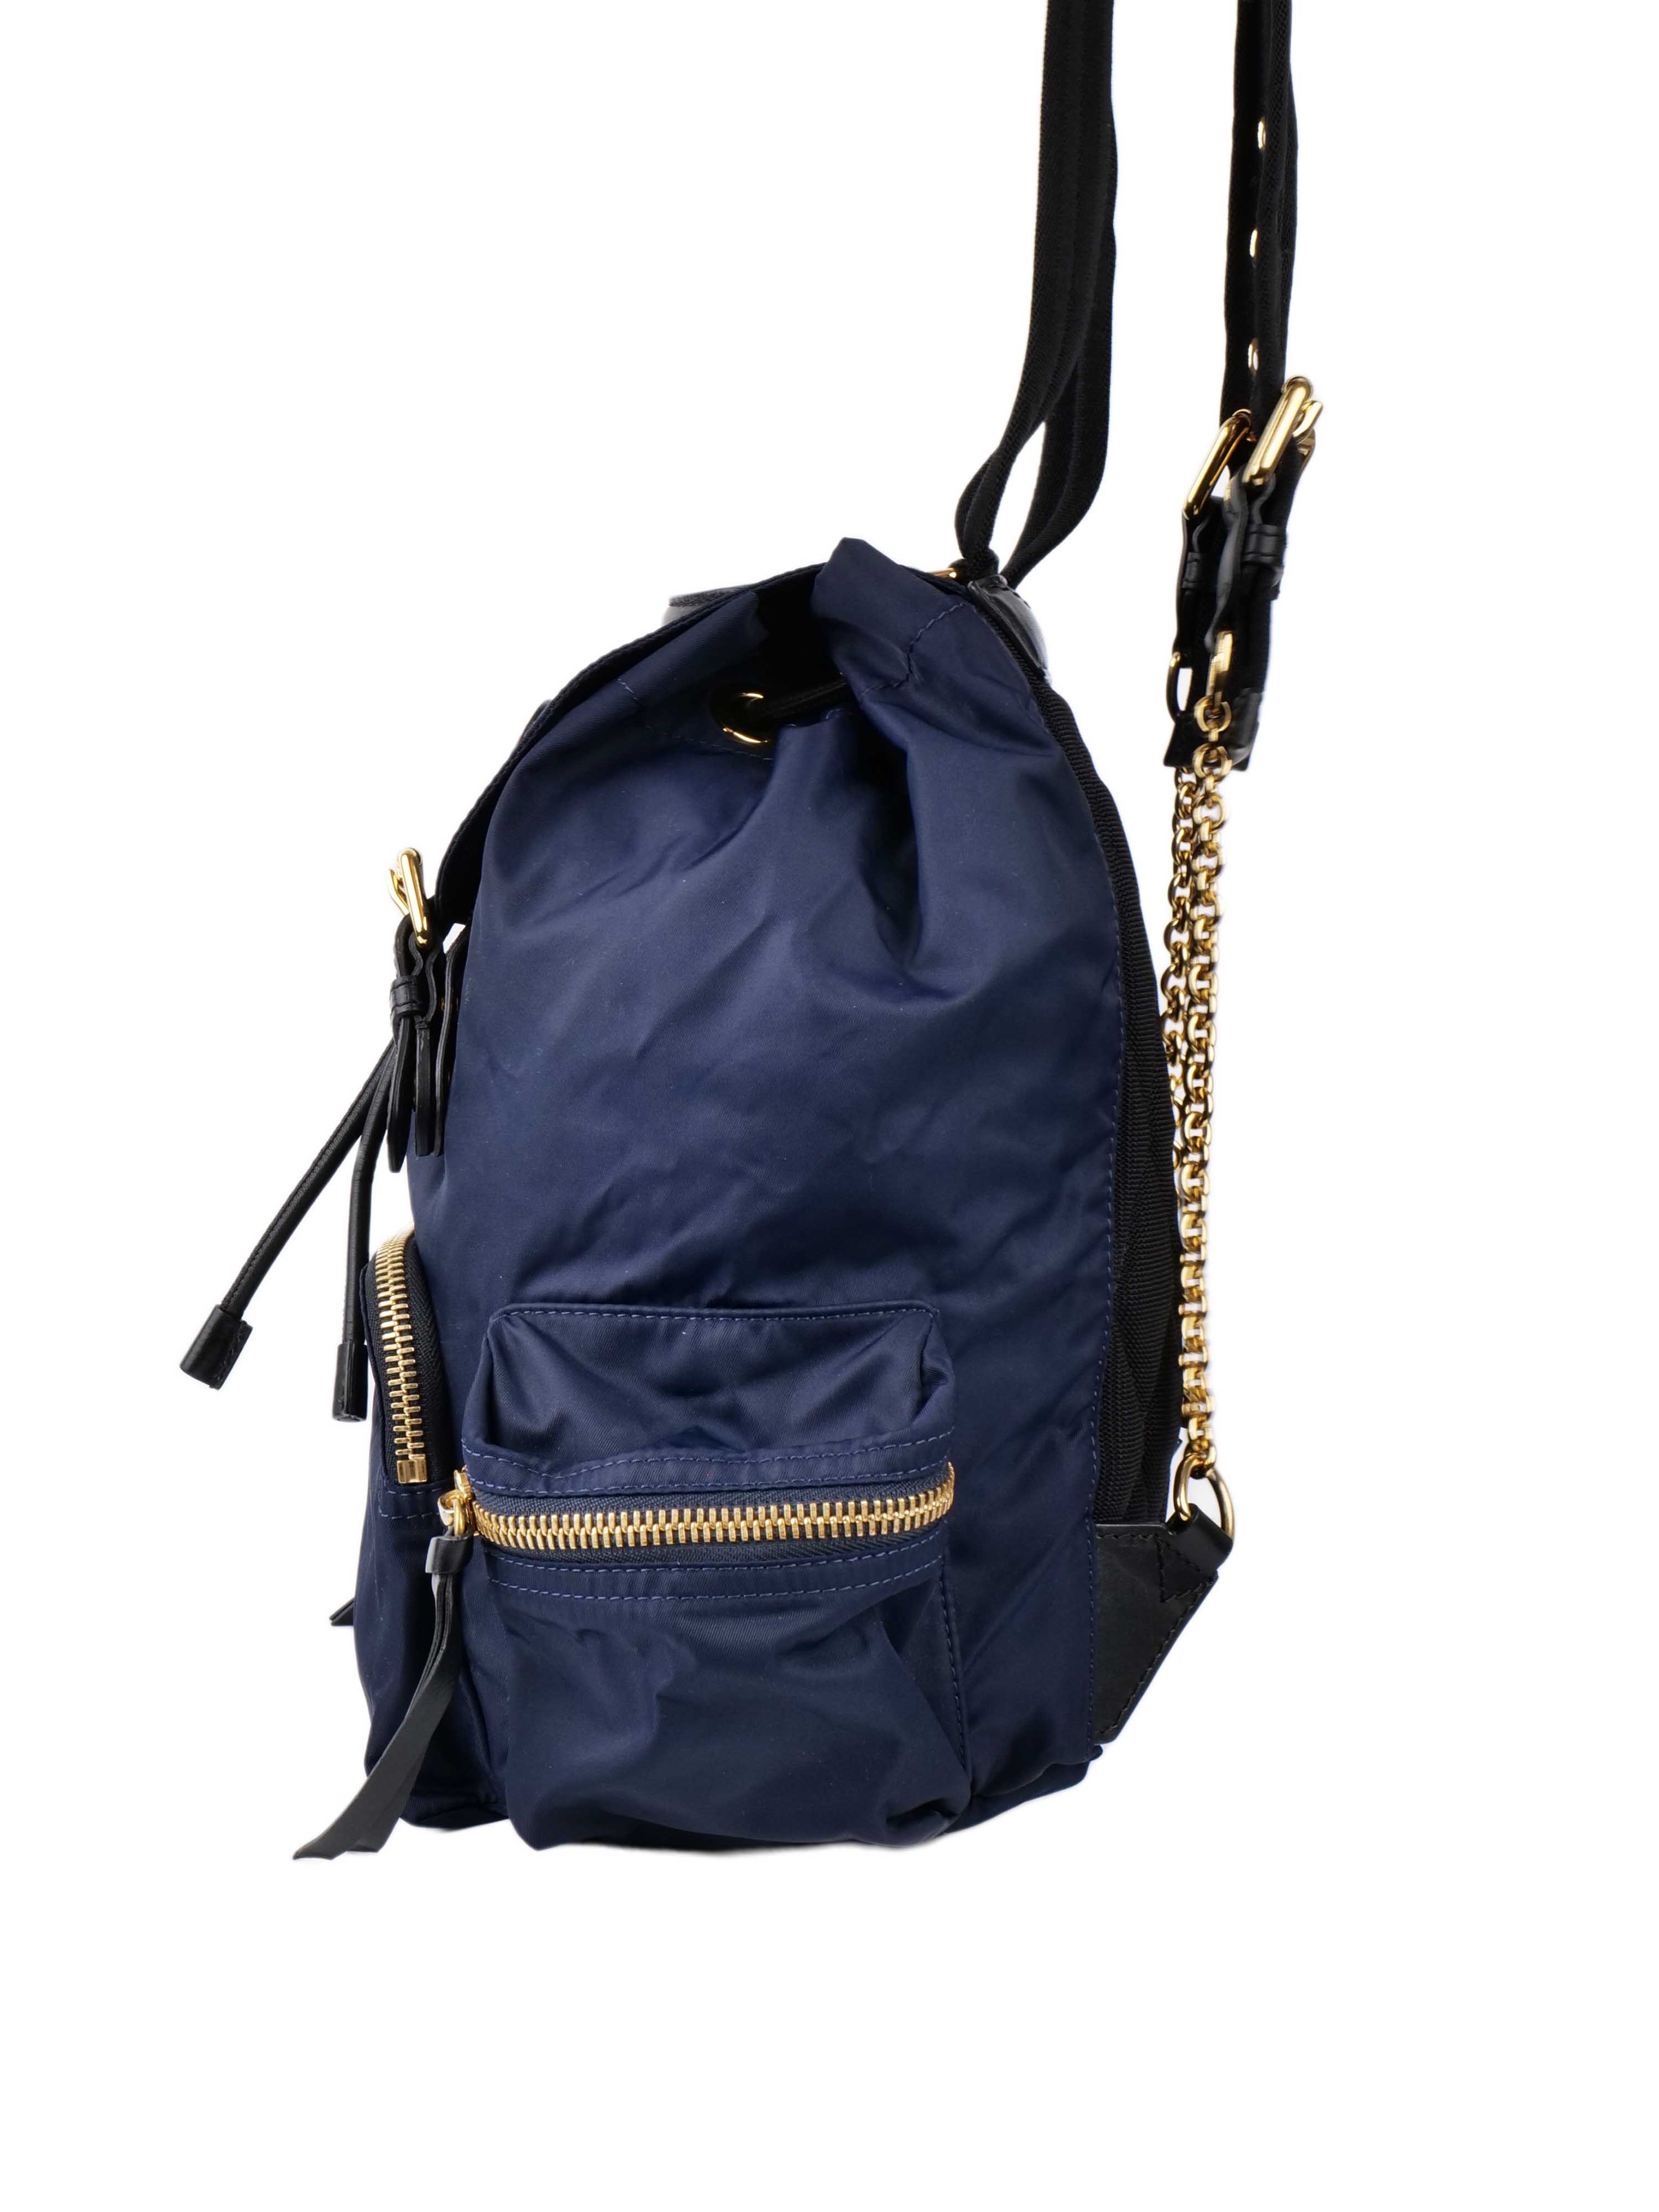 Burberry Navy Nylon Backpack.